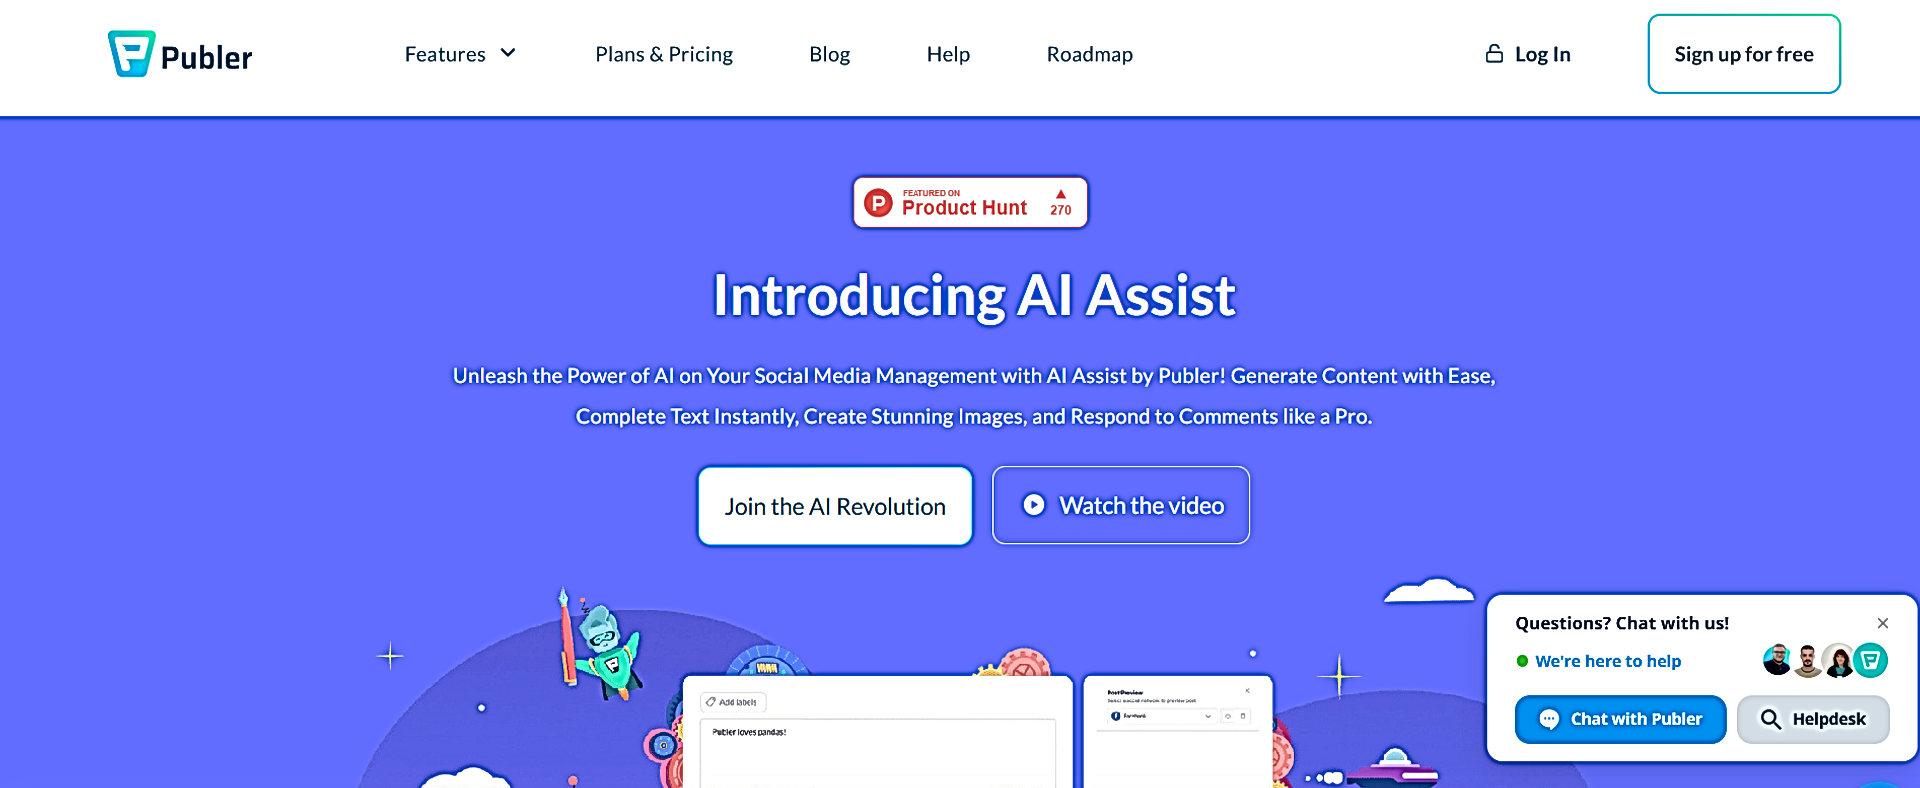 Publer AI Assist featured